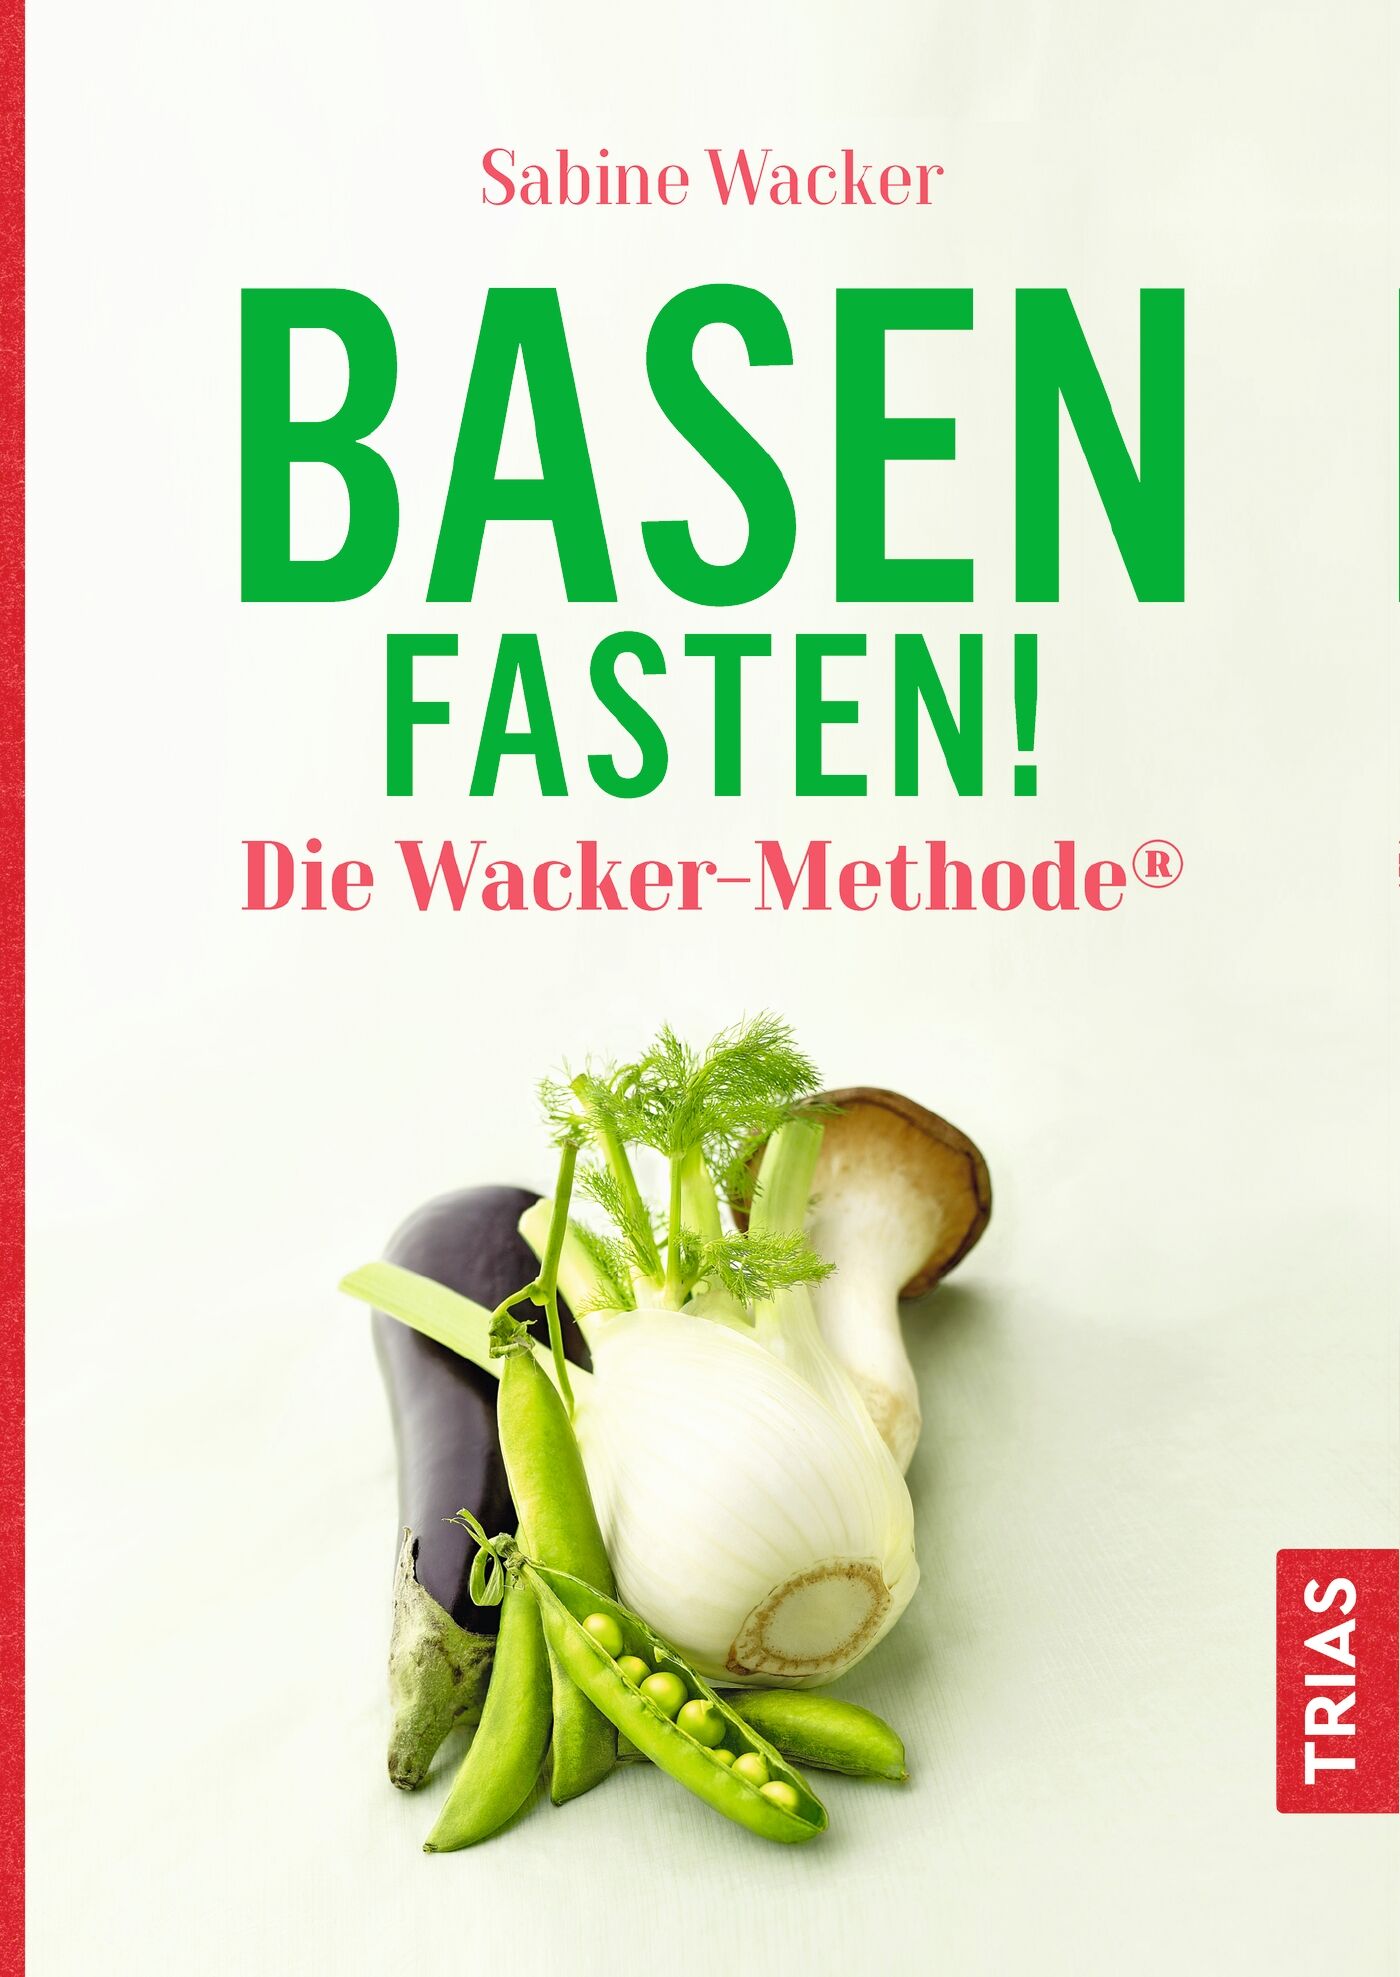 Basenfasten! Die Wacker-Methode®, 9783432112213